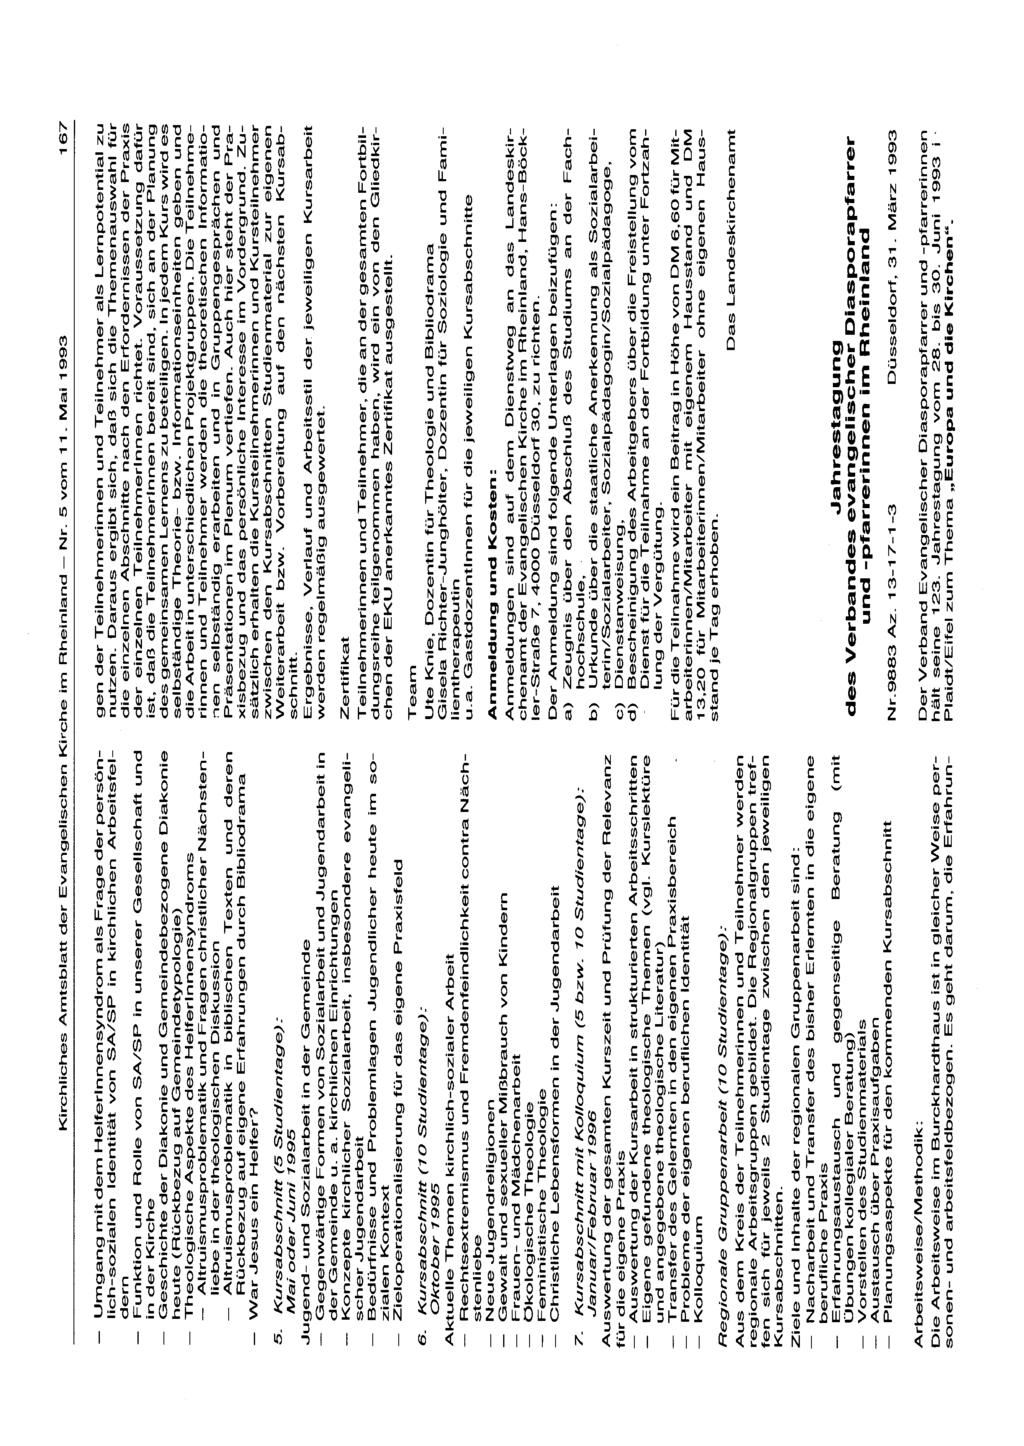 Kirchliches Amtsblatt der Evangelischen Kirche im Rheinland - Nr. 5 vom 11. Mai 1993 167 - Umgang mit dem Helferinnensyndrom als Frage der persönlich-sozialen.